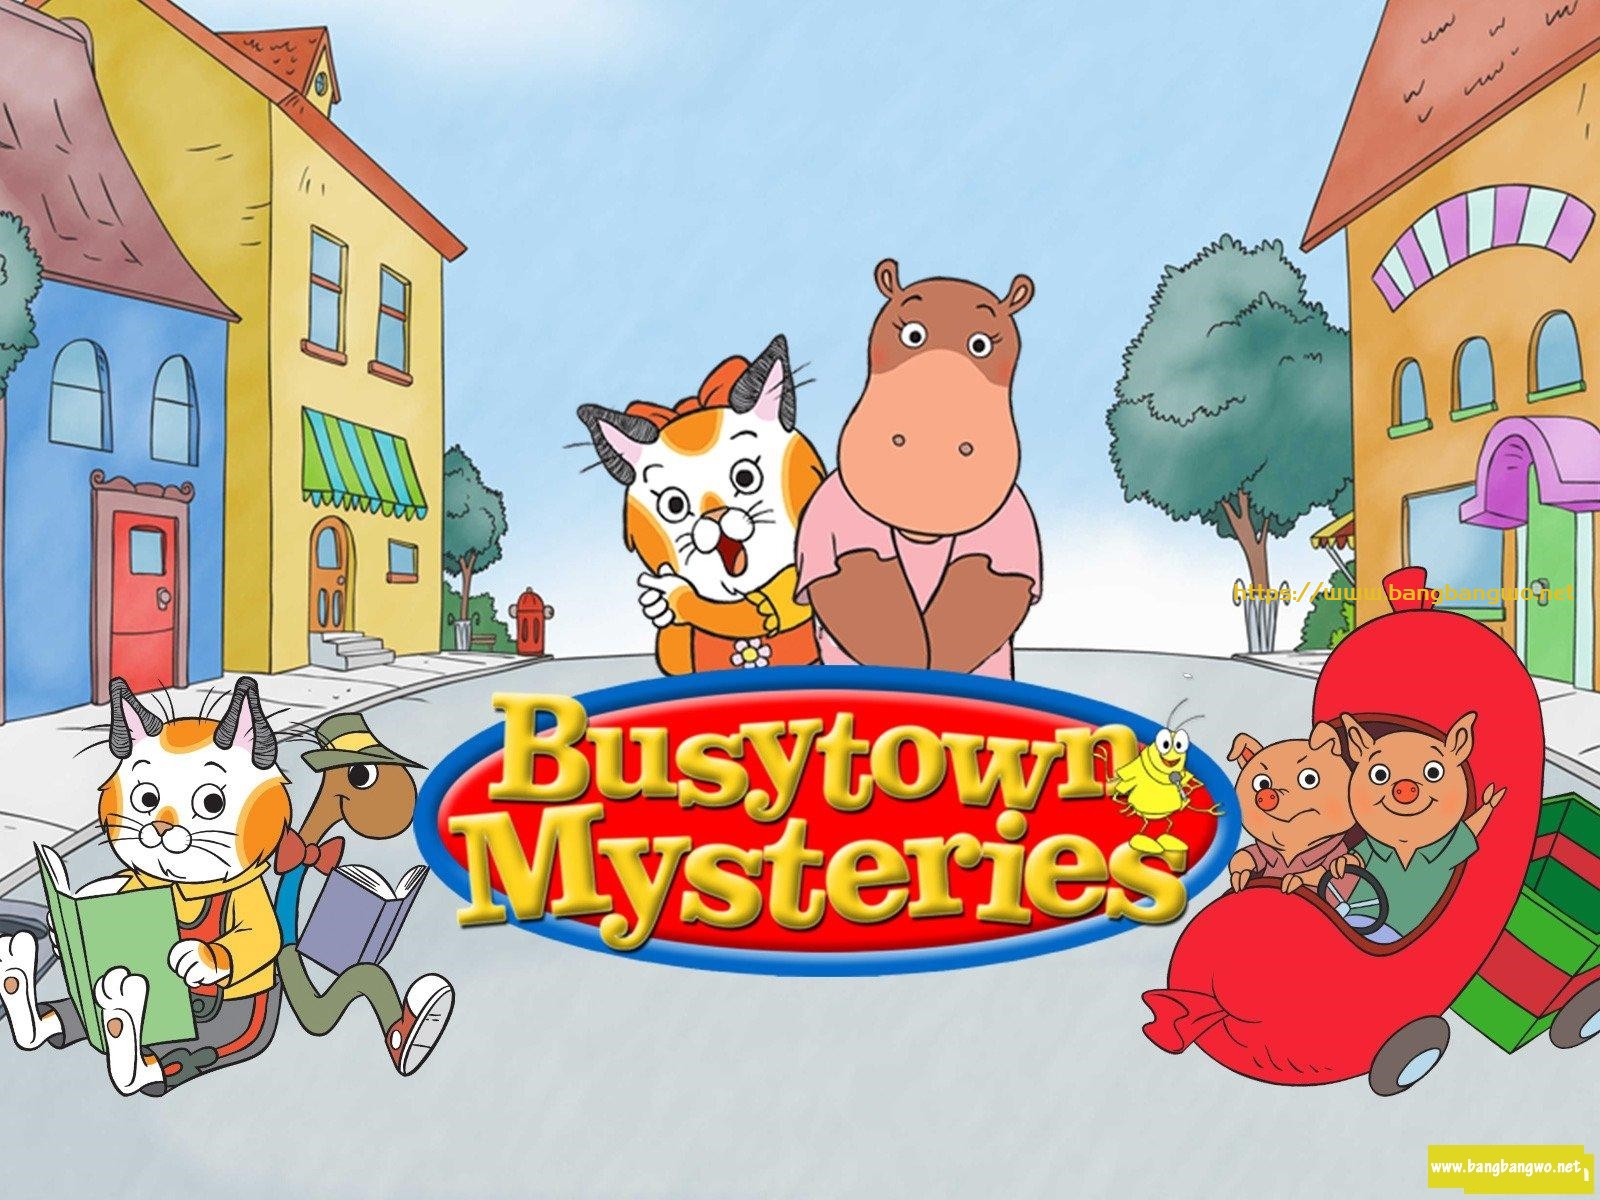 忙忙碌碌镇 Busytown Mysteries